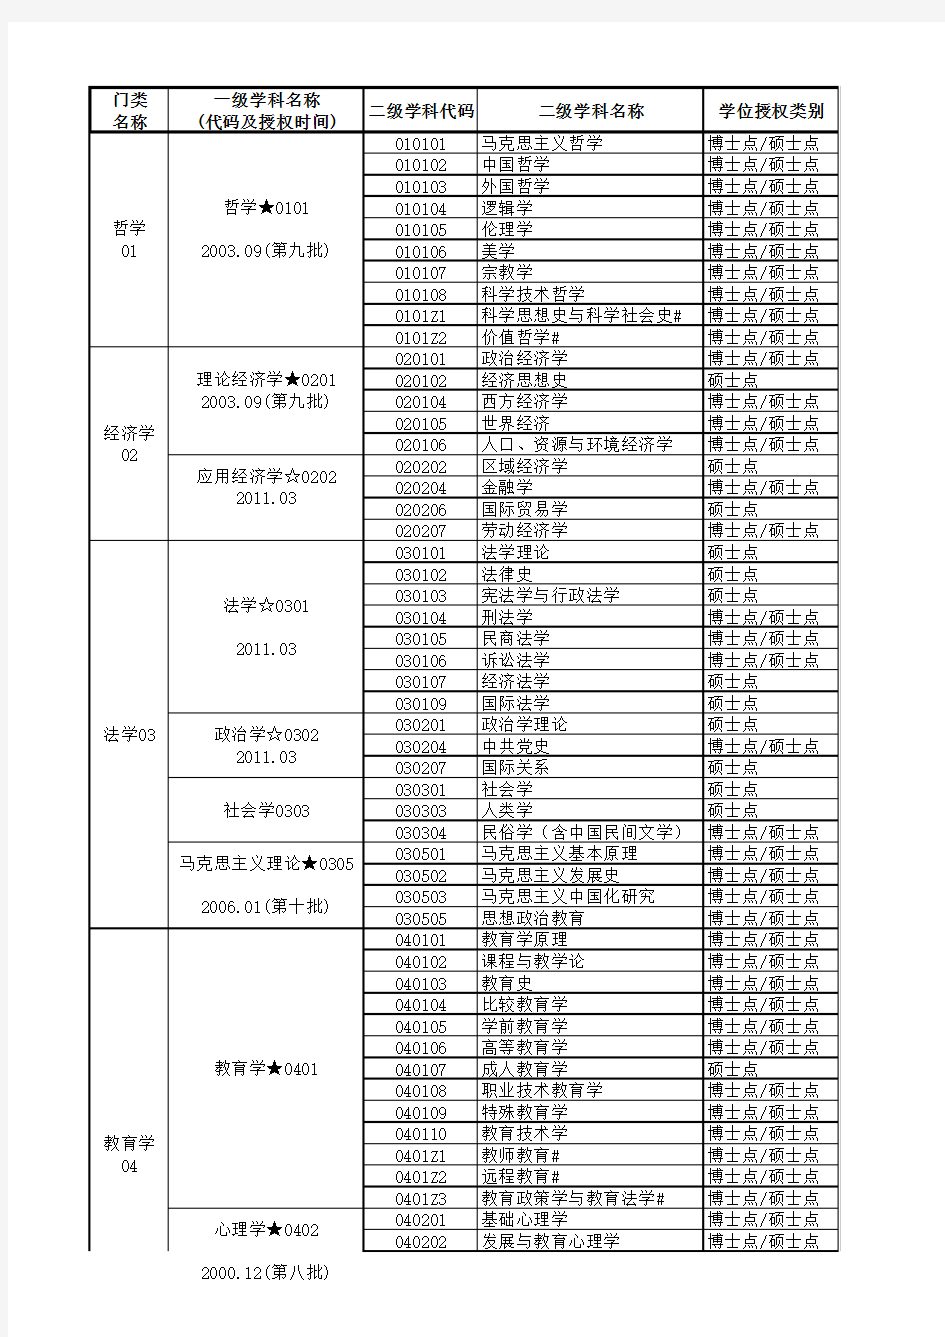 北京师范大学二级学科目录(201606)